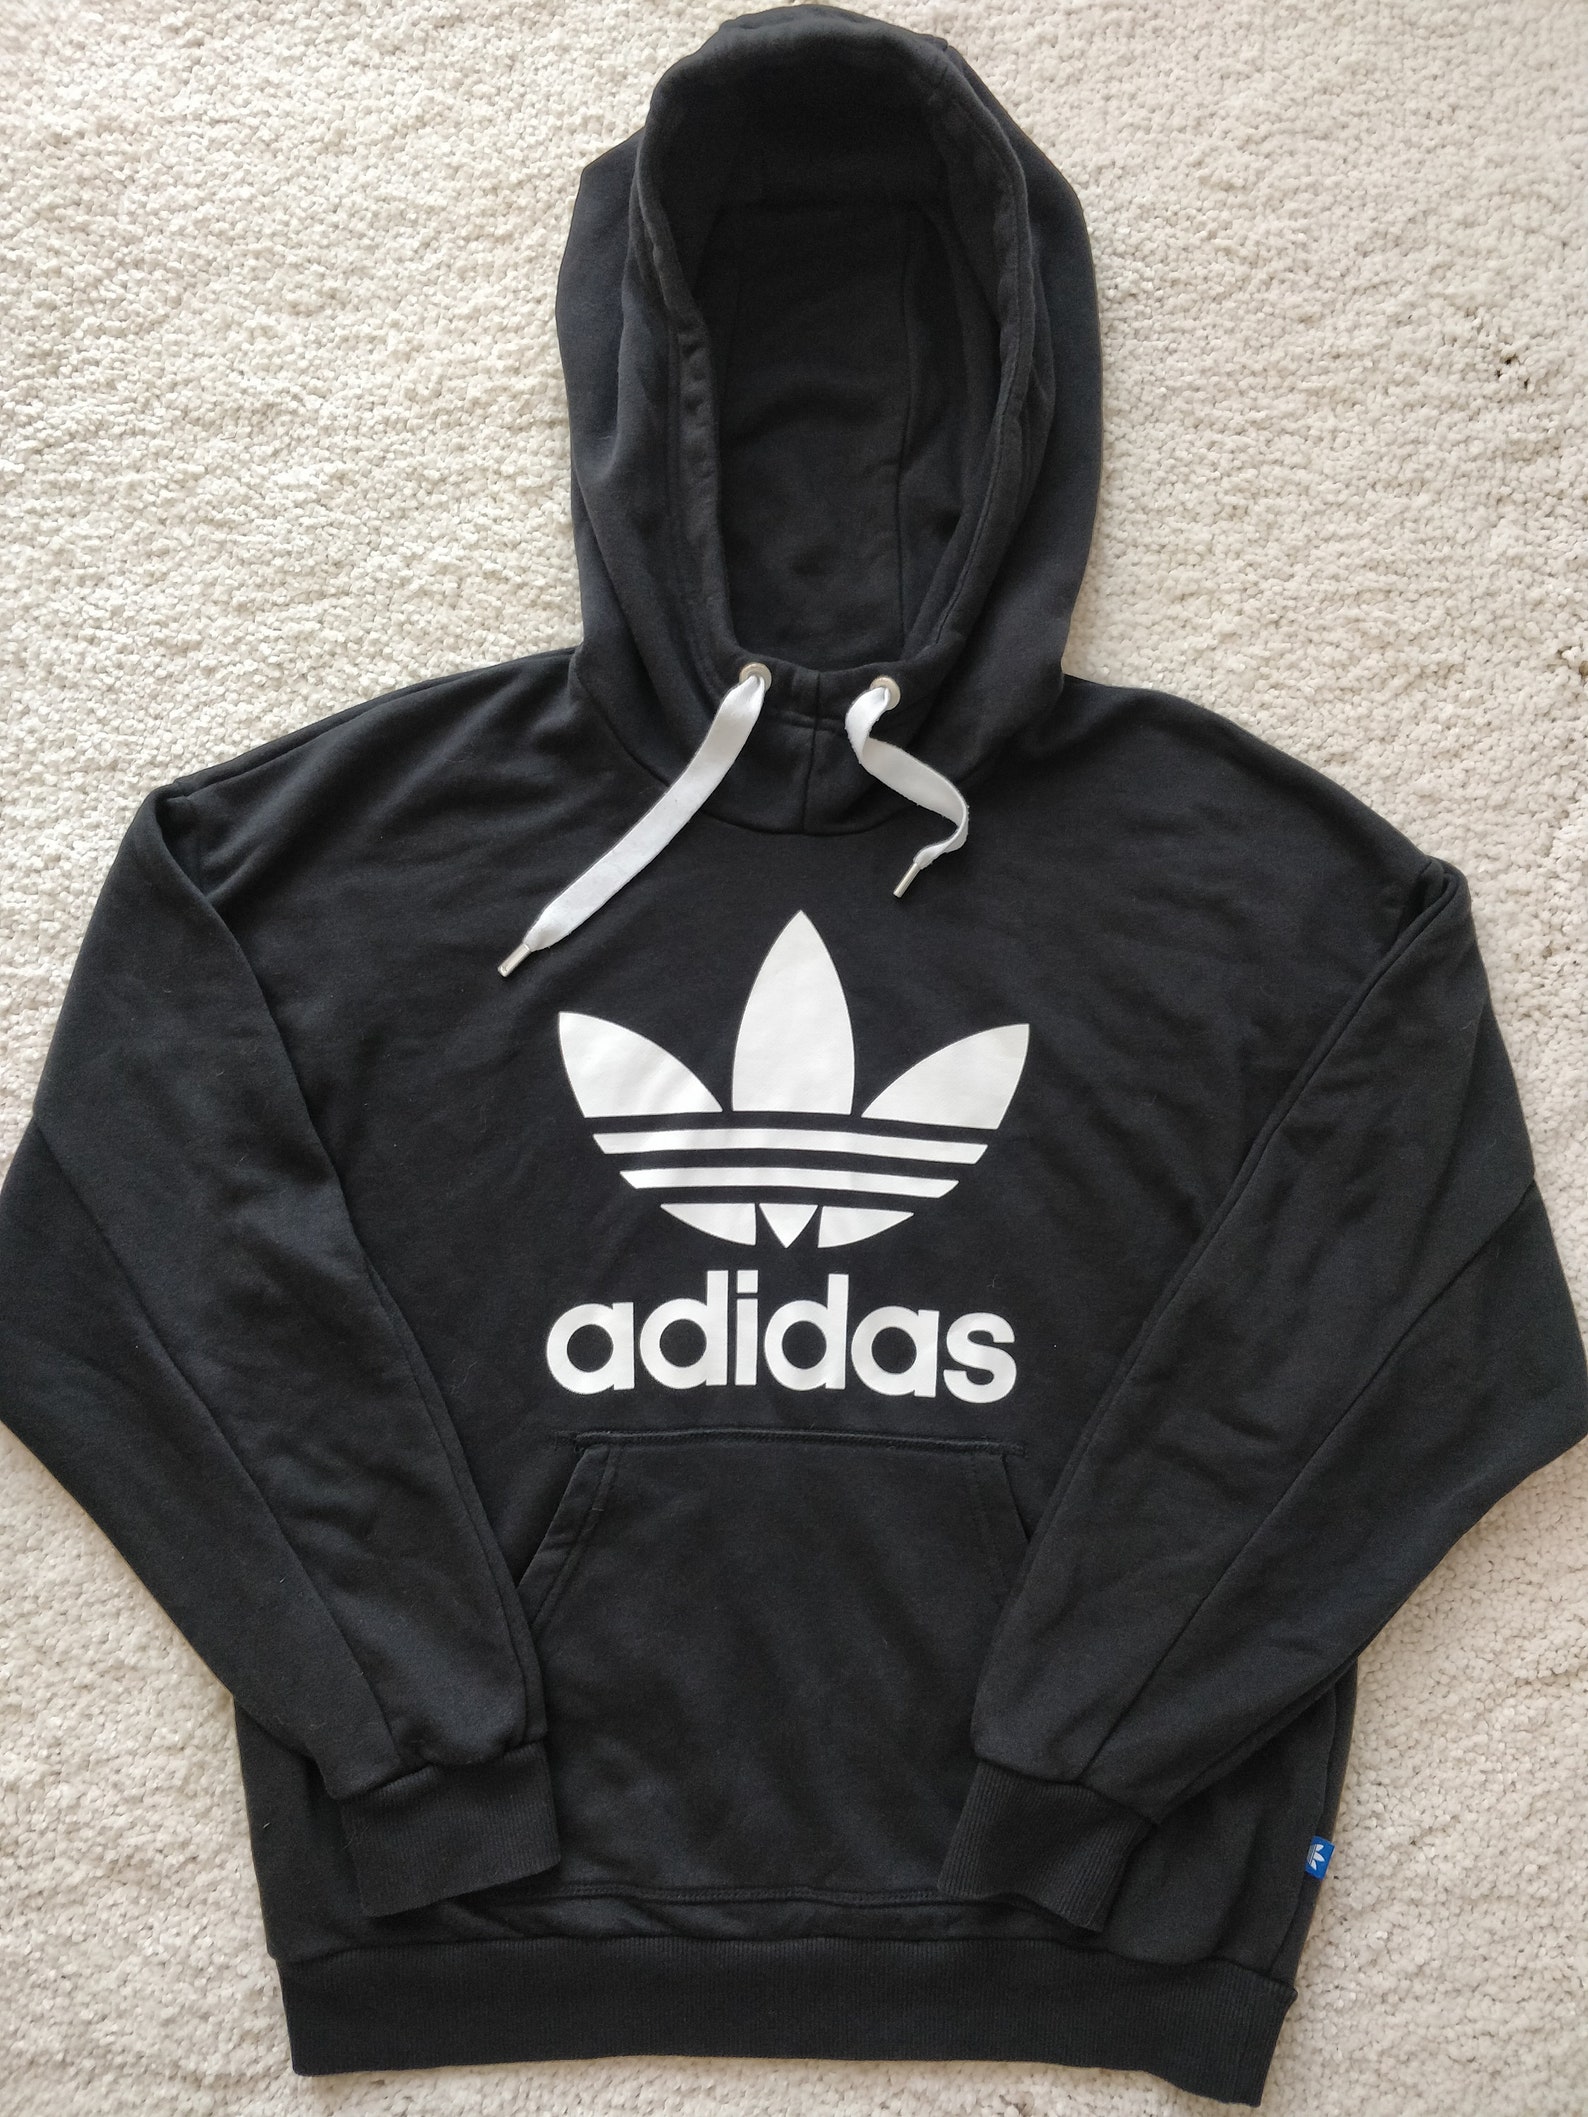 Adidas Originals Mens Hoodie Tracksuit Top Jacket Hooded Black | Etsy